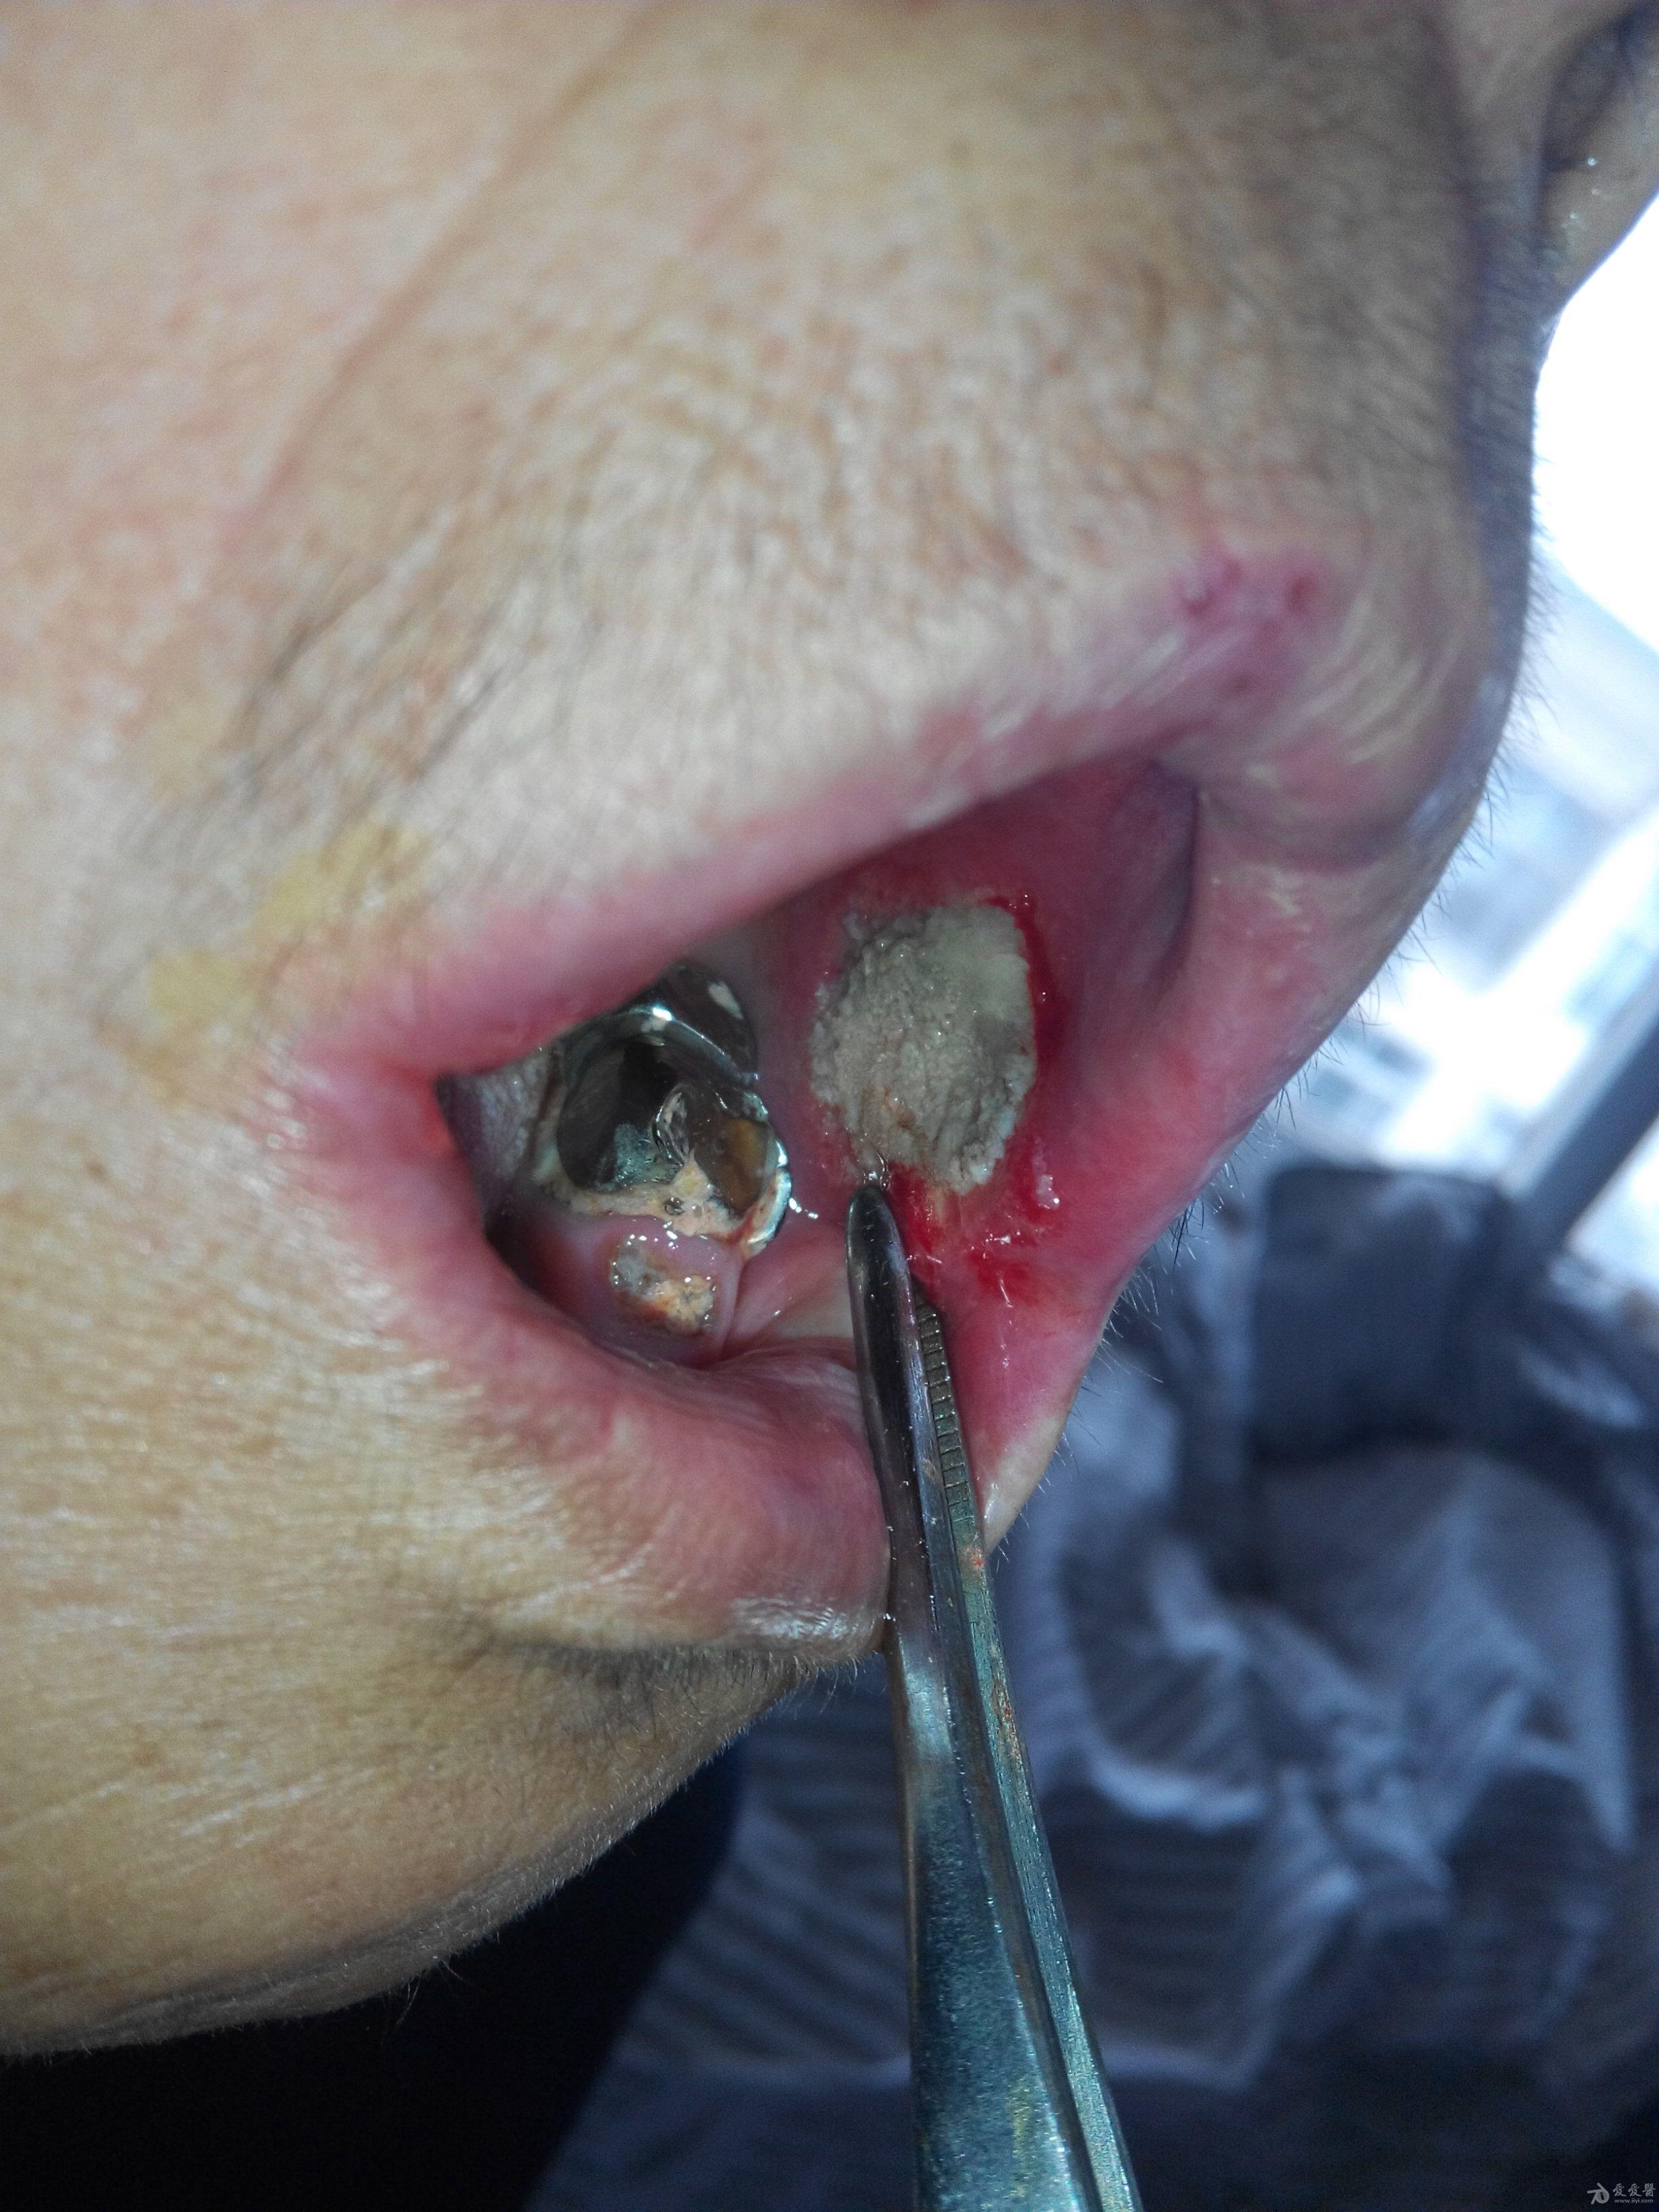 口腔溃疡最严重的图片图片